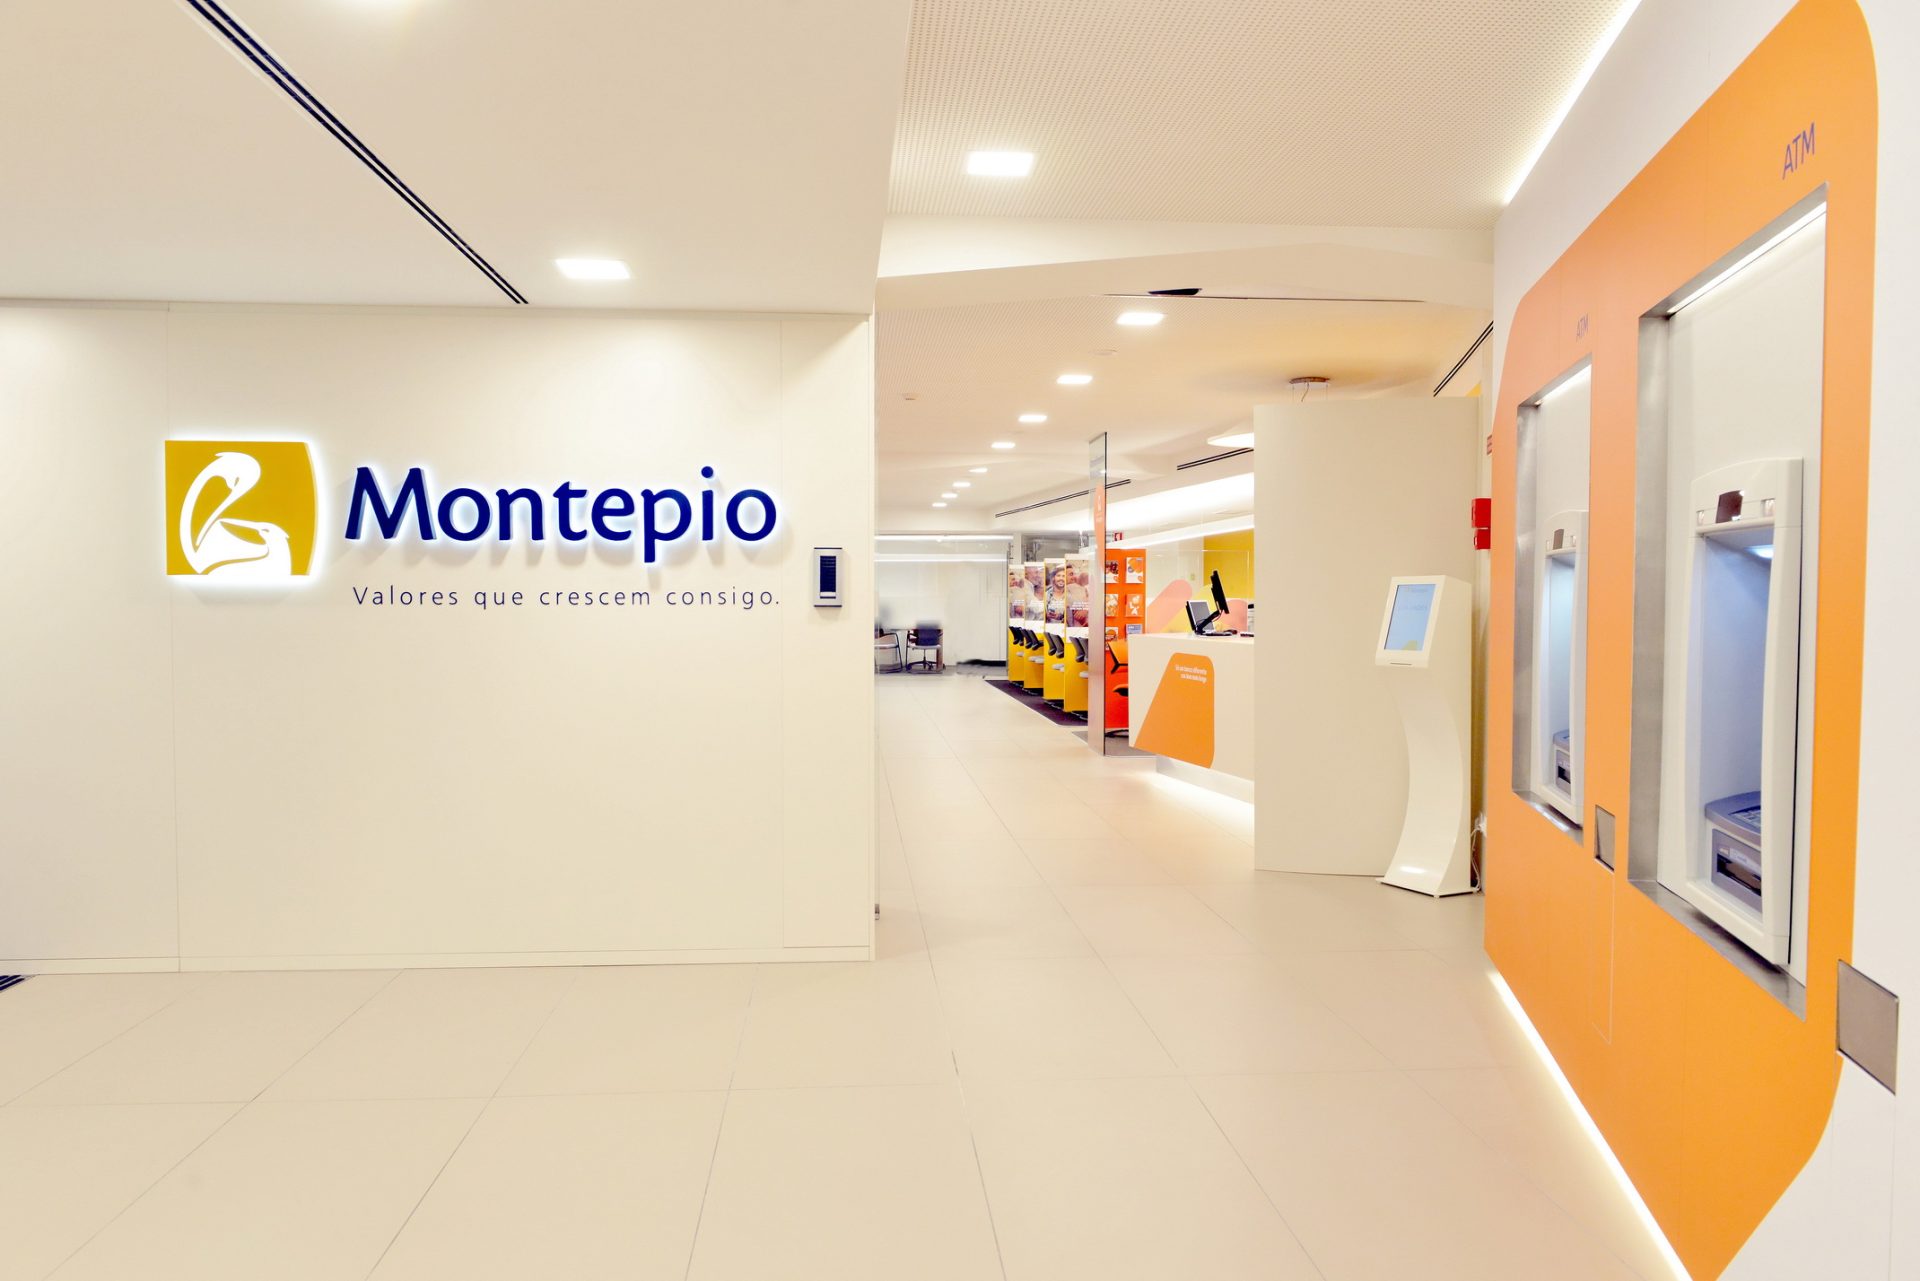 Montepio investe seis milhões em nova imagem